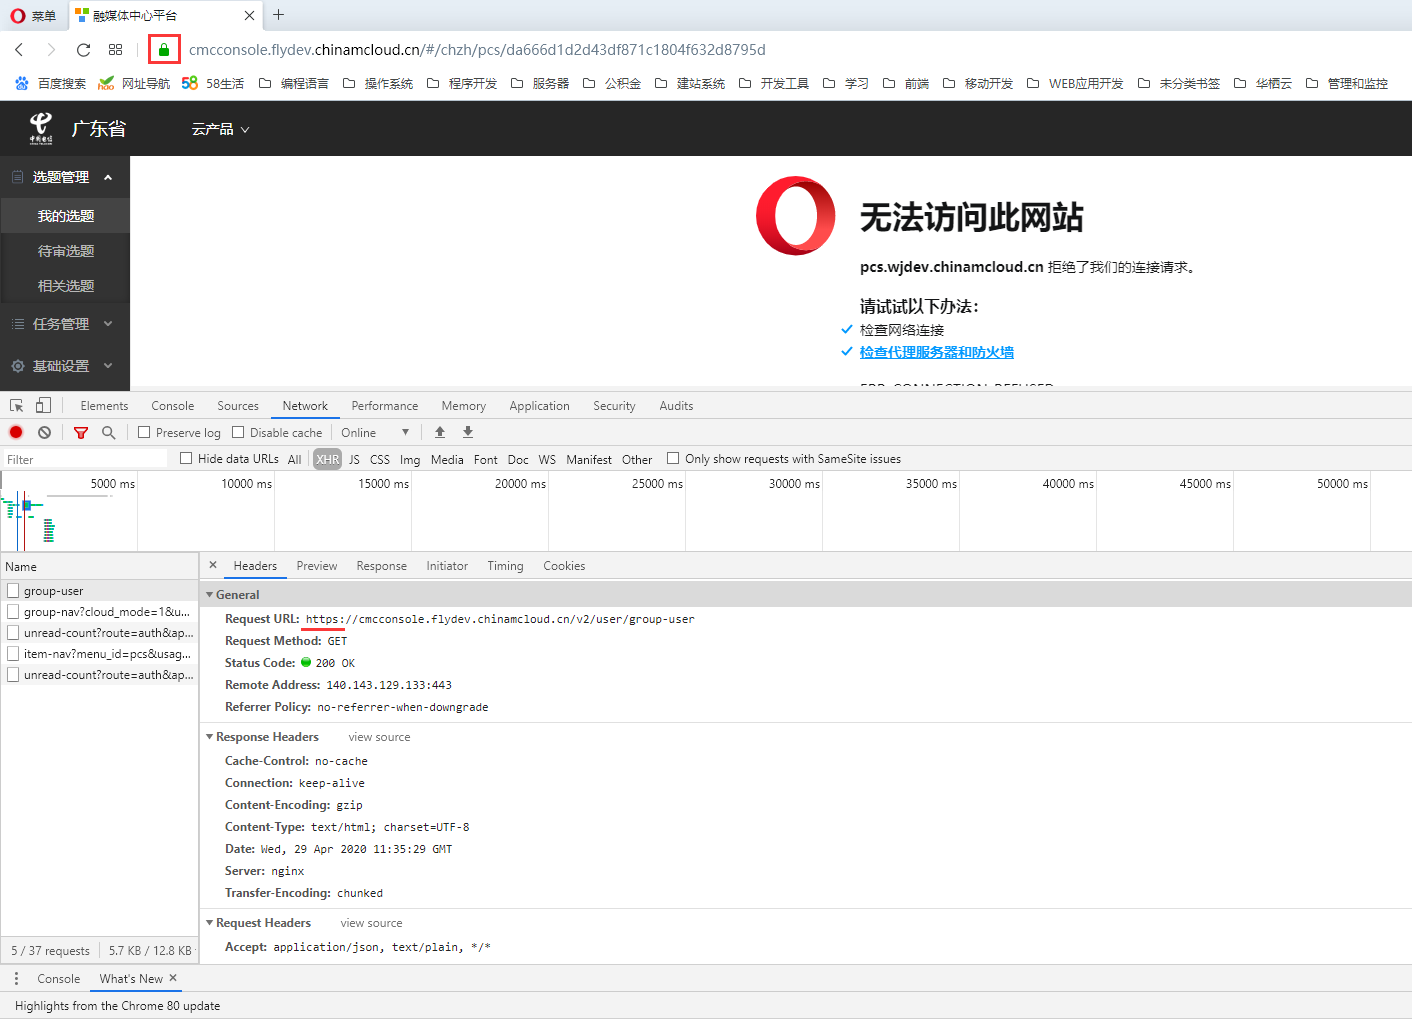 在 Opera 浏览器中，打开的网址：https://cmcconsole.flydev.chinamcloud.cn/#/chzh/pcs/da666d1d2d43df871c1804f632d8795d